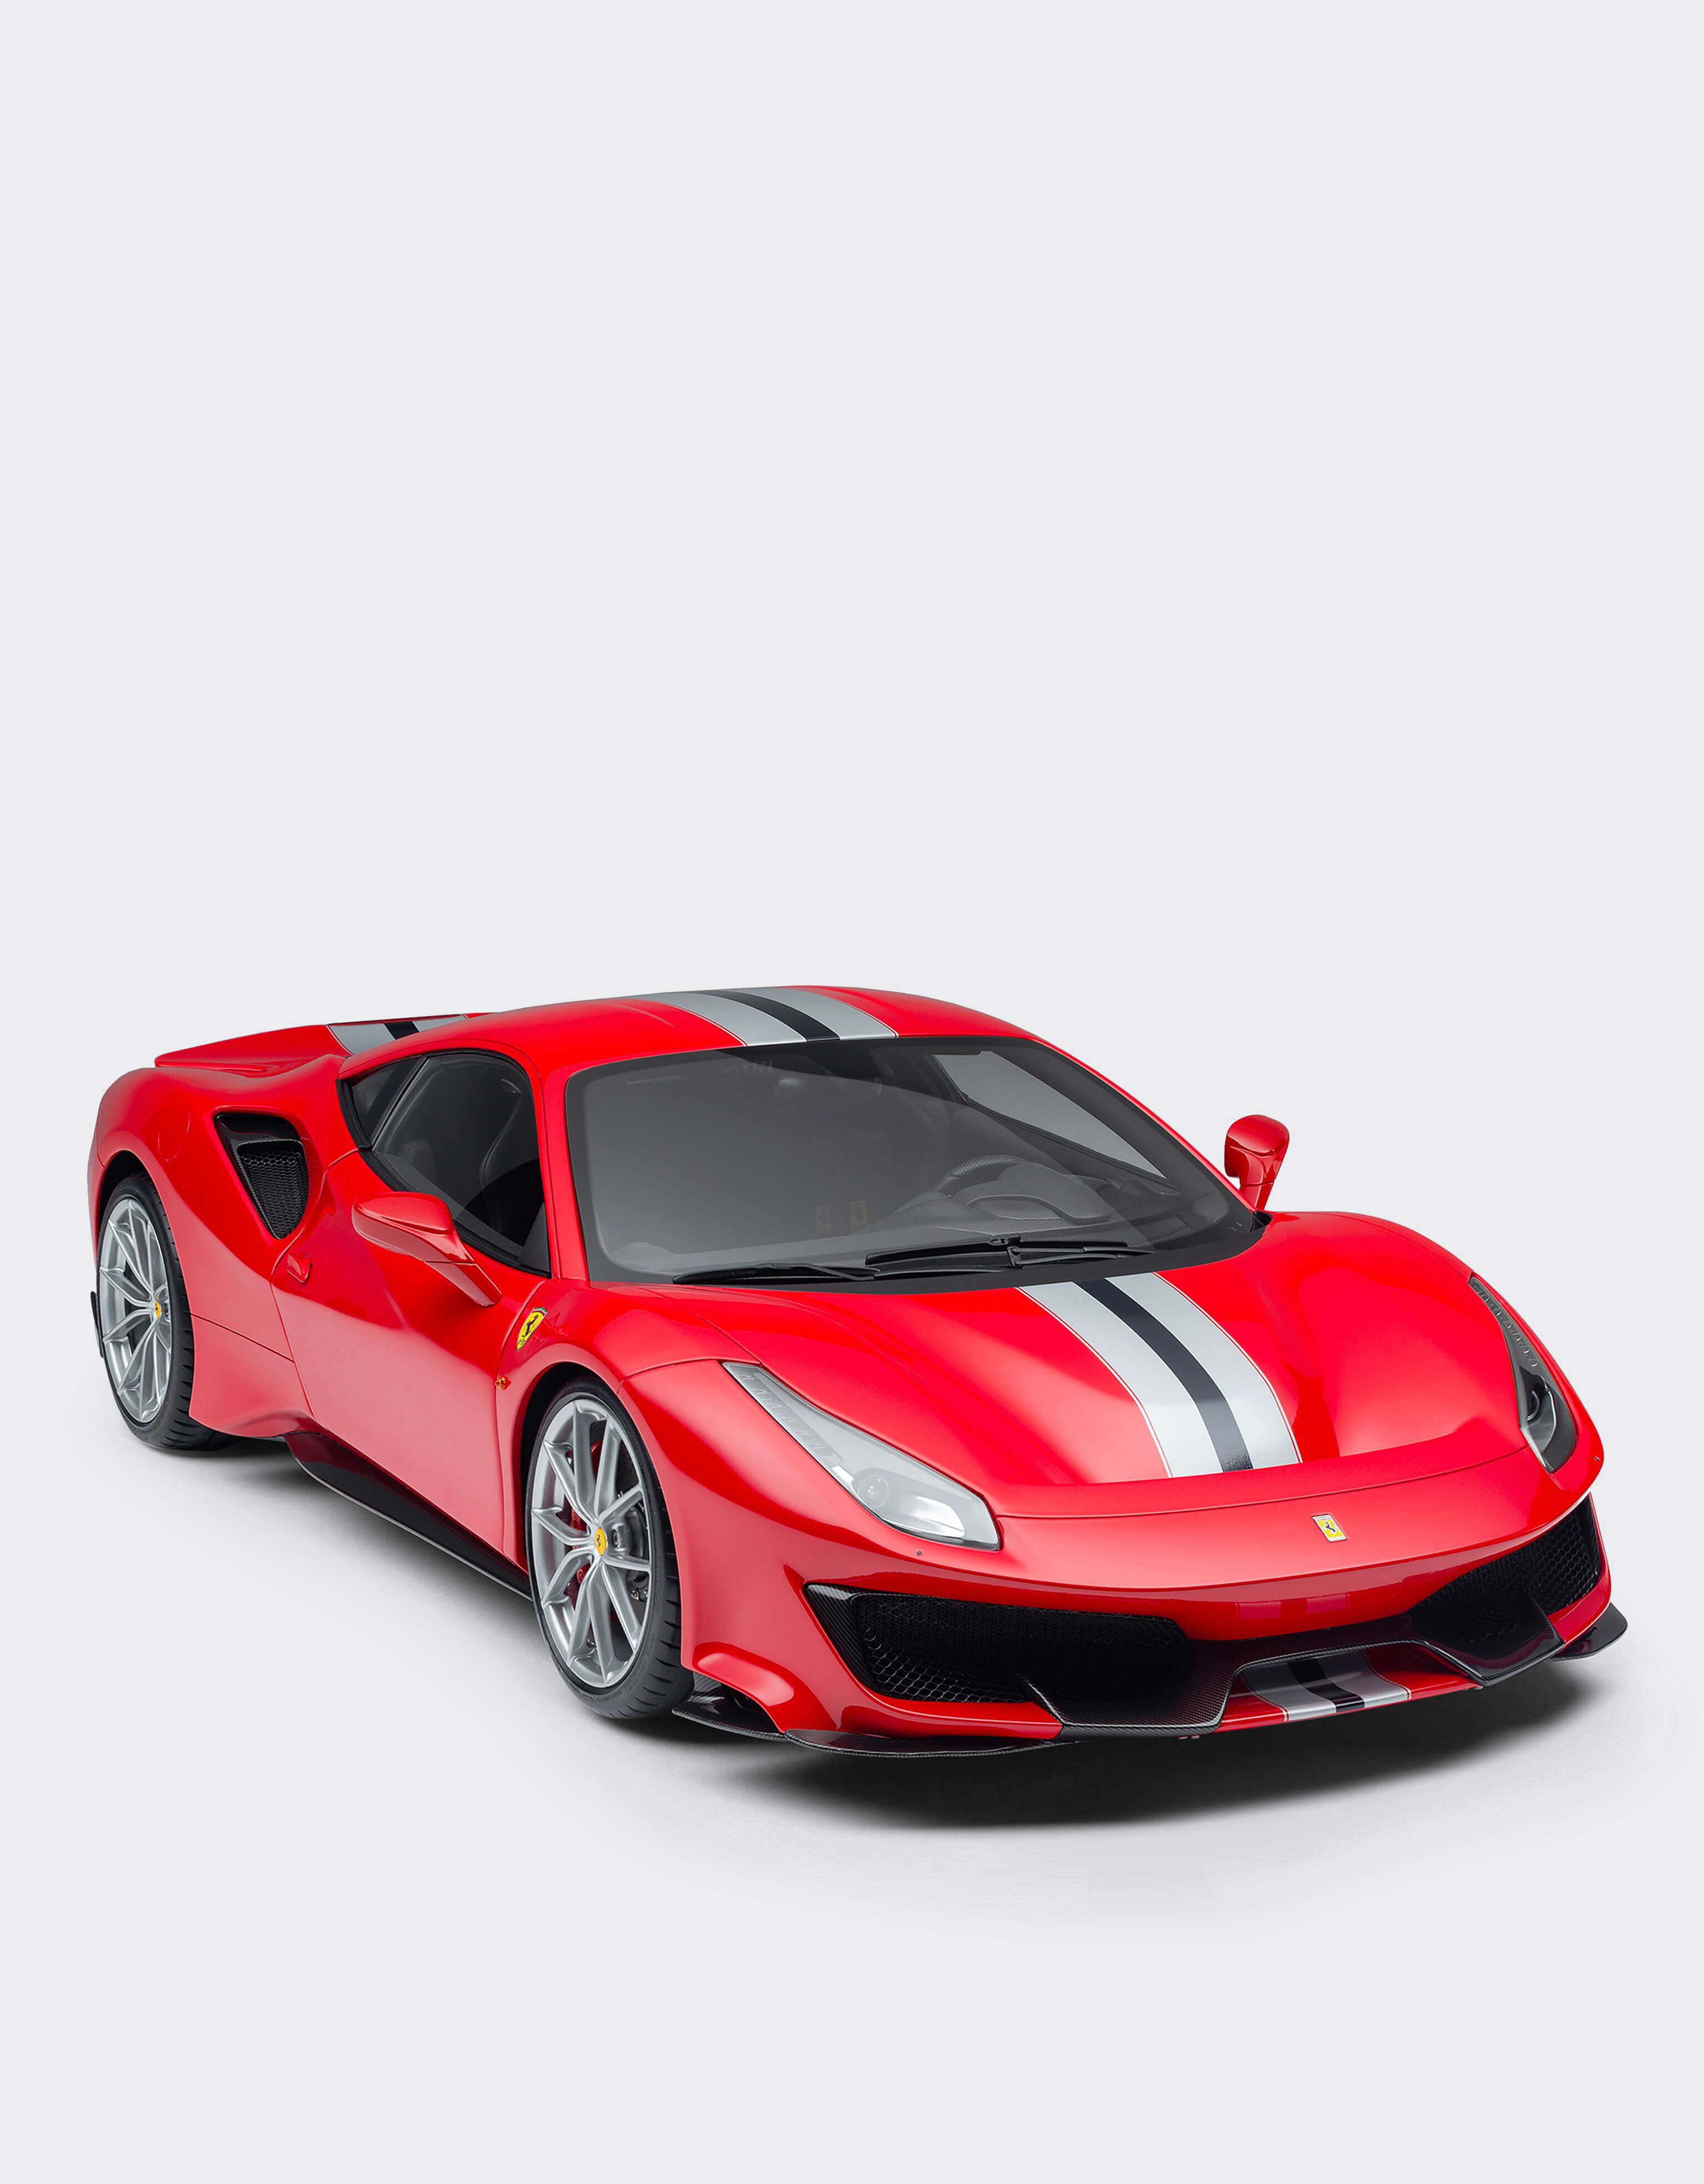 ${brand} Miniatura Ferrari 488 Pista a escala 1:8 ${colorDescription} ${masterID}